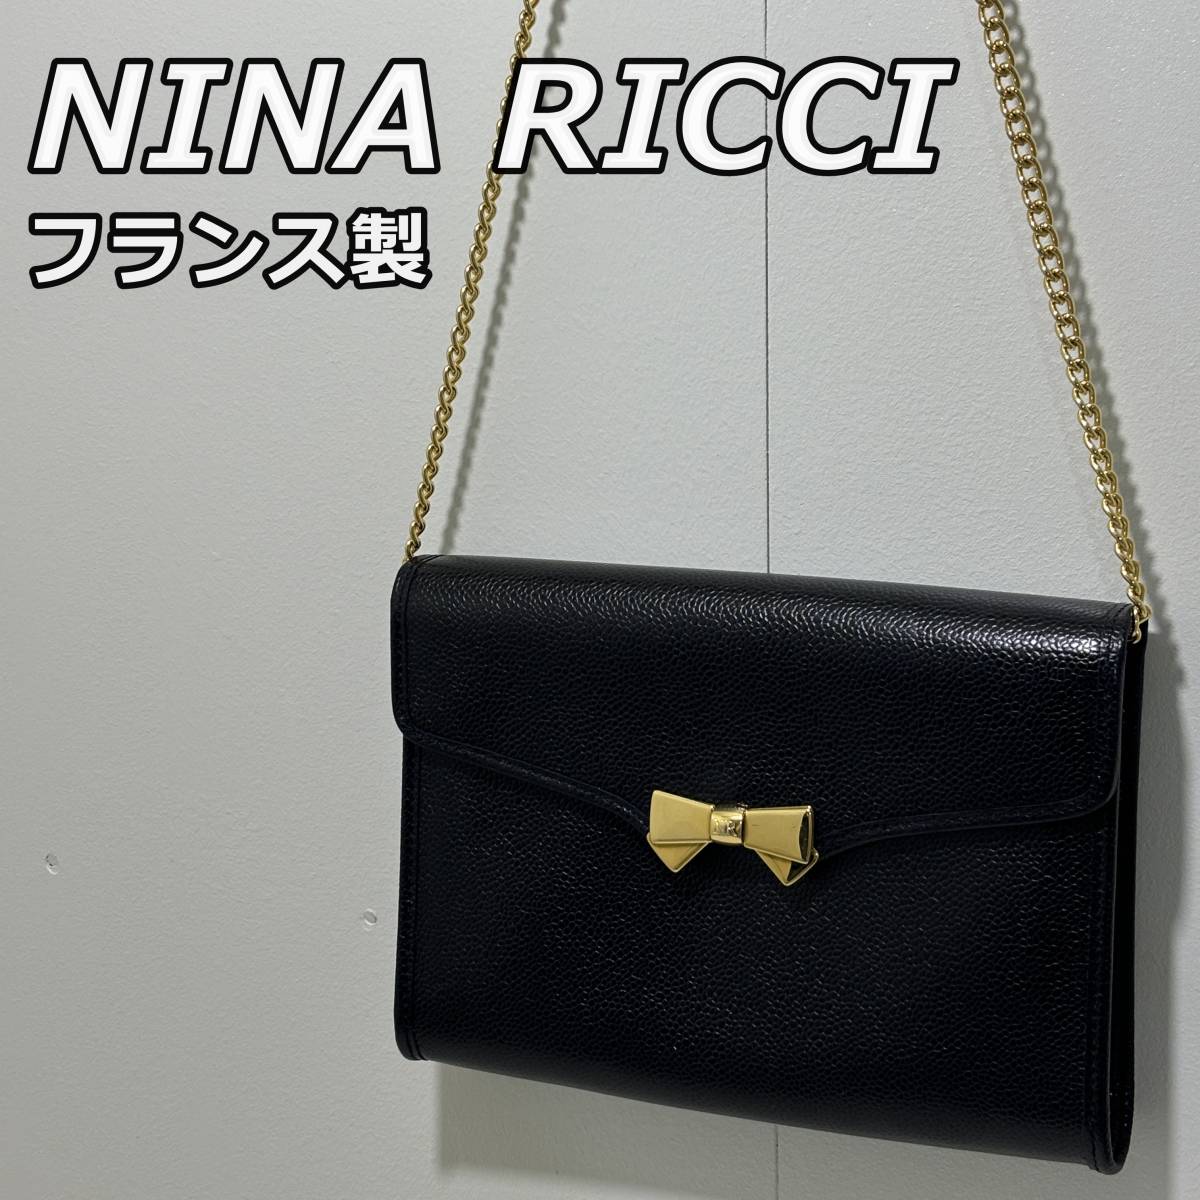 【NINA RICCI】ニナリッチ フランス製 ビンテージ 2WAY レザー ショルダー クラッチバッグ チェーンストラップ 黒 ブラック 金 ゴールド